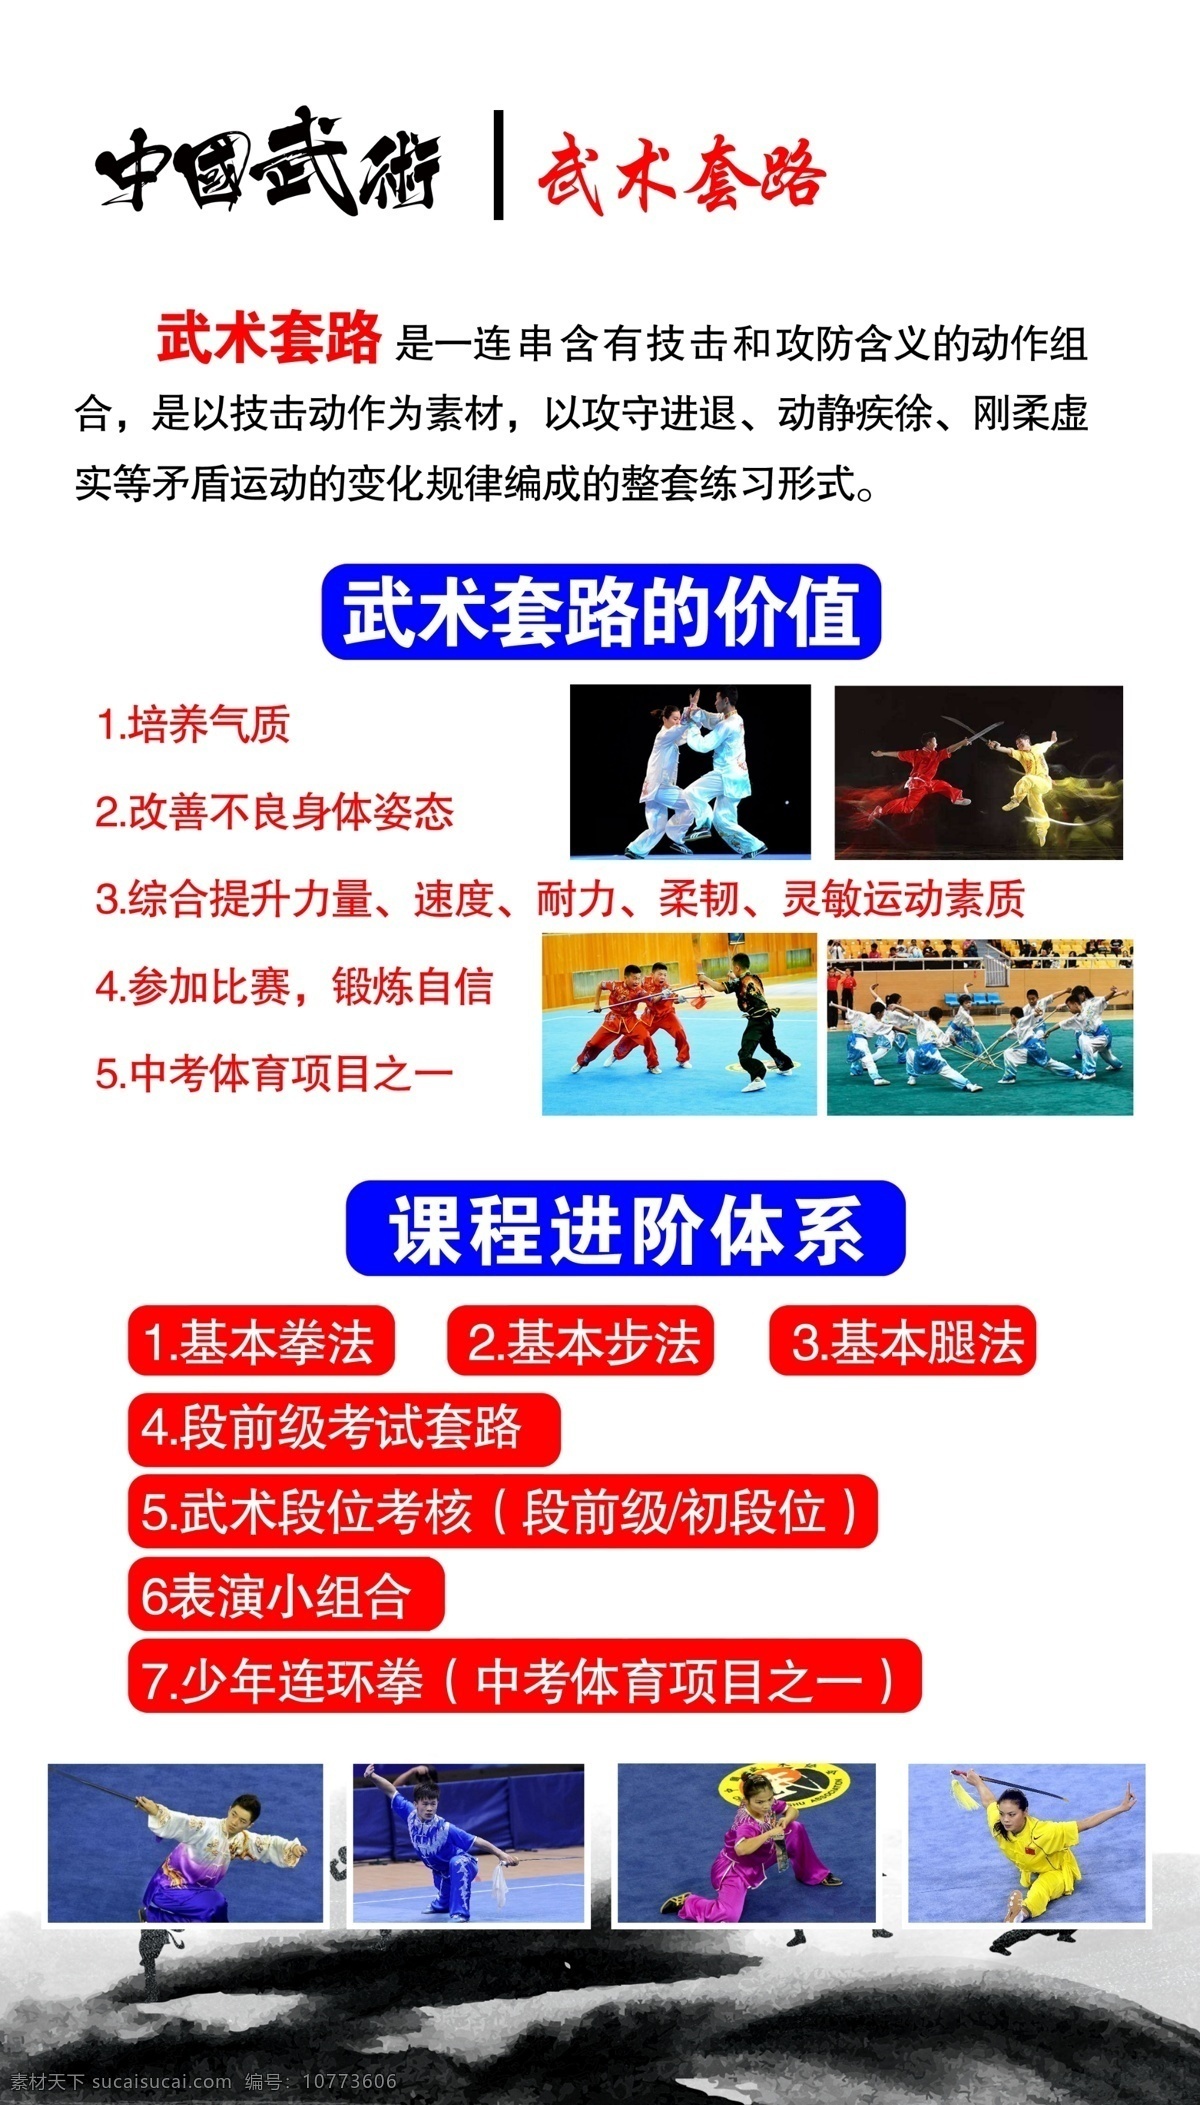 中国武术图片 中国武术 武术套路 武术版面 展板 学校版面 分层图